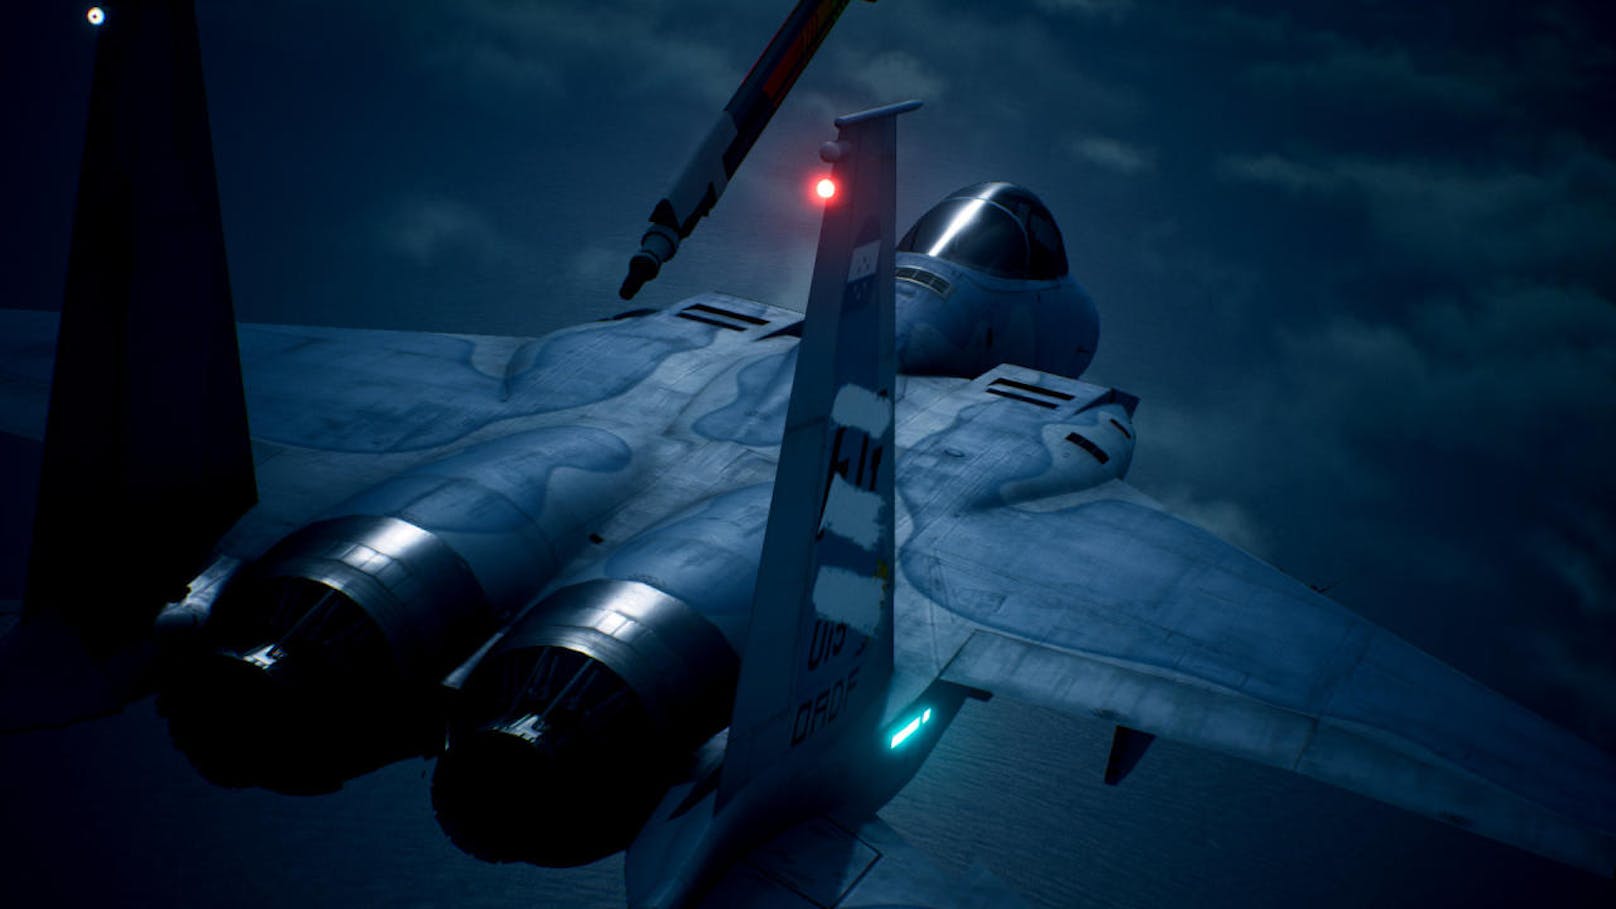 nsgesamt ist mit Ace Combat 7: Skies Unknown ein Action-Pflichttitel gelungen, der sich zwar an Flugzeug-Freunde richtet, für den aber auch jeder andere einen Blick riskieren sollte. Wetter-, Wolken- und Flugeffekte suchen ihresgleichen und die VR-Kampagne ist das Eindrucksvollste, was die Virtuelle Realität derzeit zu bieten hat.